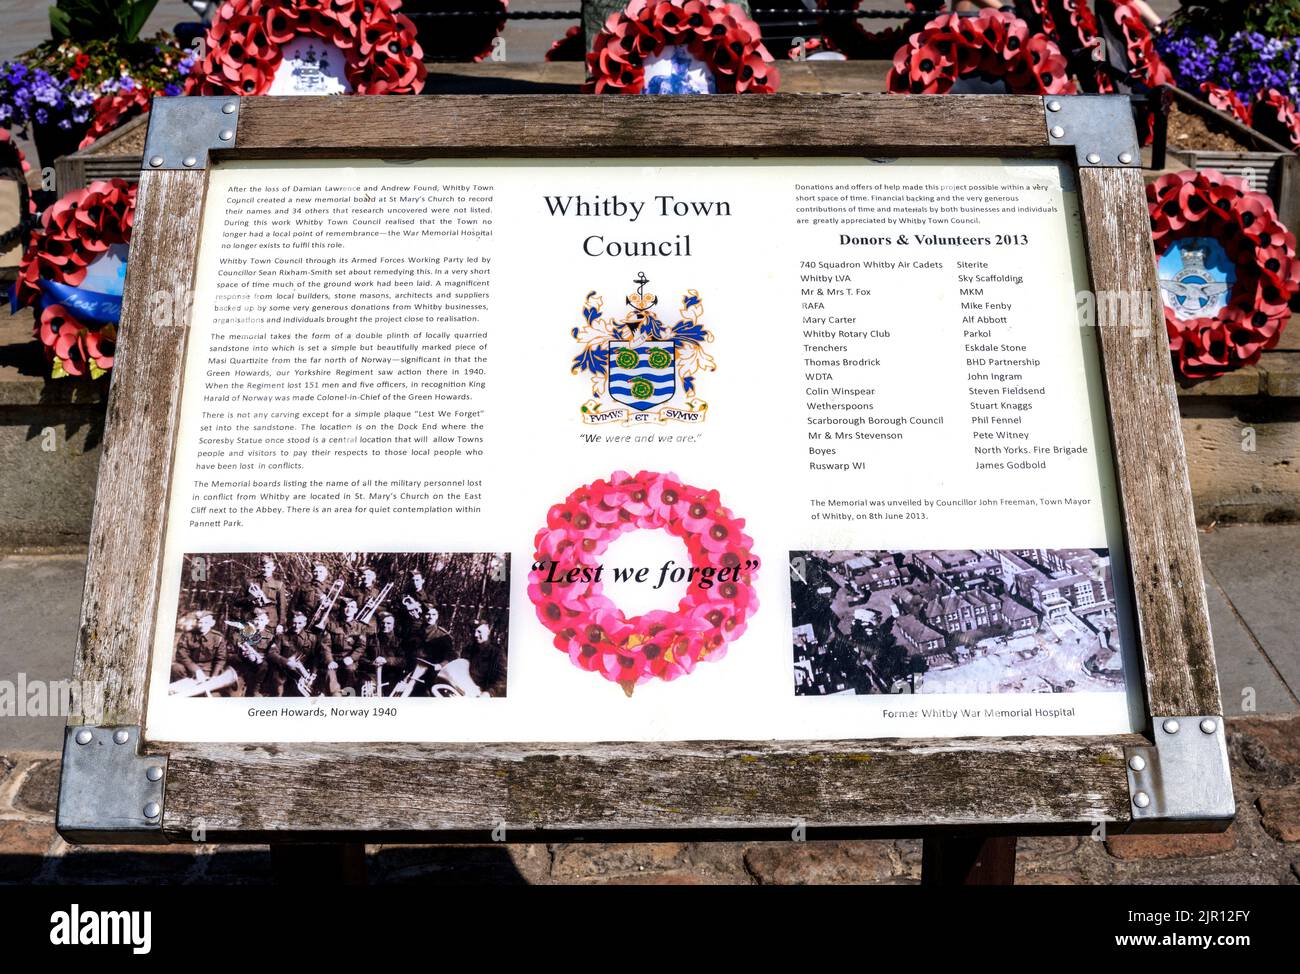 Whitby Office de tourisme au mémorial de guerre dans le centre de Whitby, Yorkshire, Angleterre, Royaume-Uni Banque D'Images